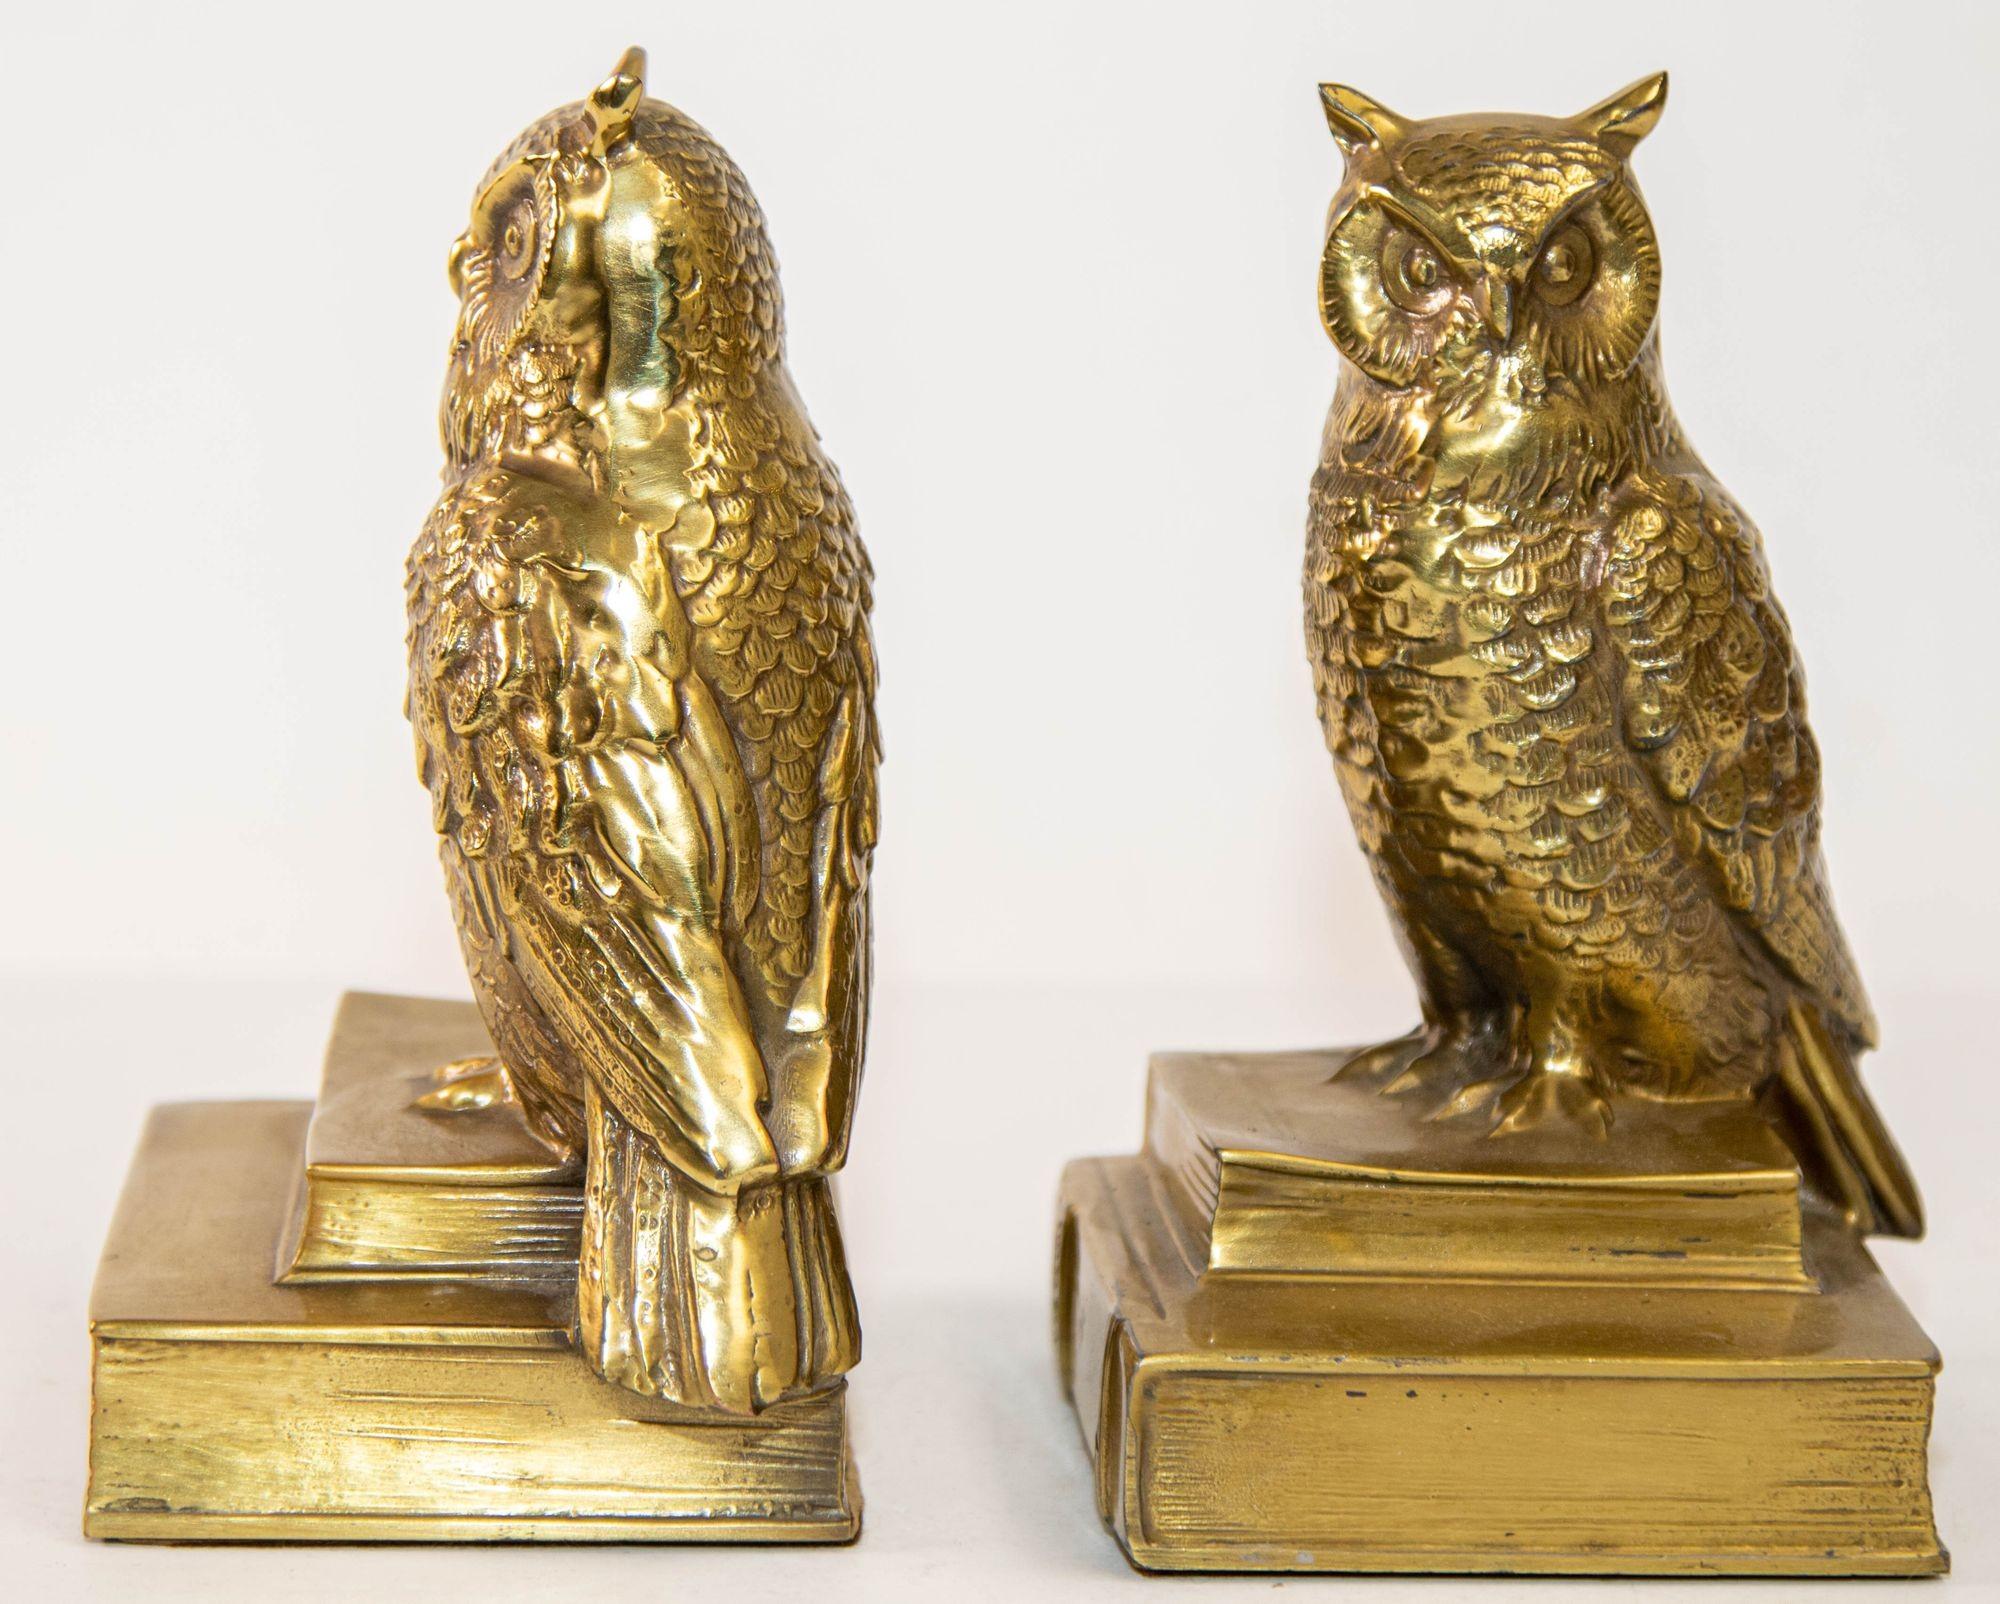 Vintage Cast Brass Owl Figur Skulptur Buchstützen Mid-Century Modern ein Paar.
Detailliertes Paar Buchenden aus massivem Messing in Form von Eulenskulpturen.
Ein Paar Eulen-Buchstützen aus Bronzeguss, die auf zwei Geschichtsbüchern sitzen.